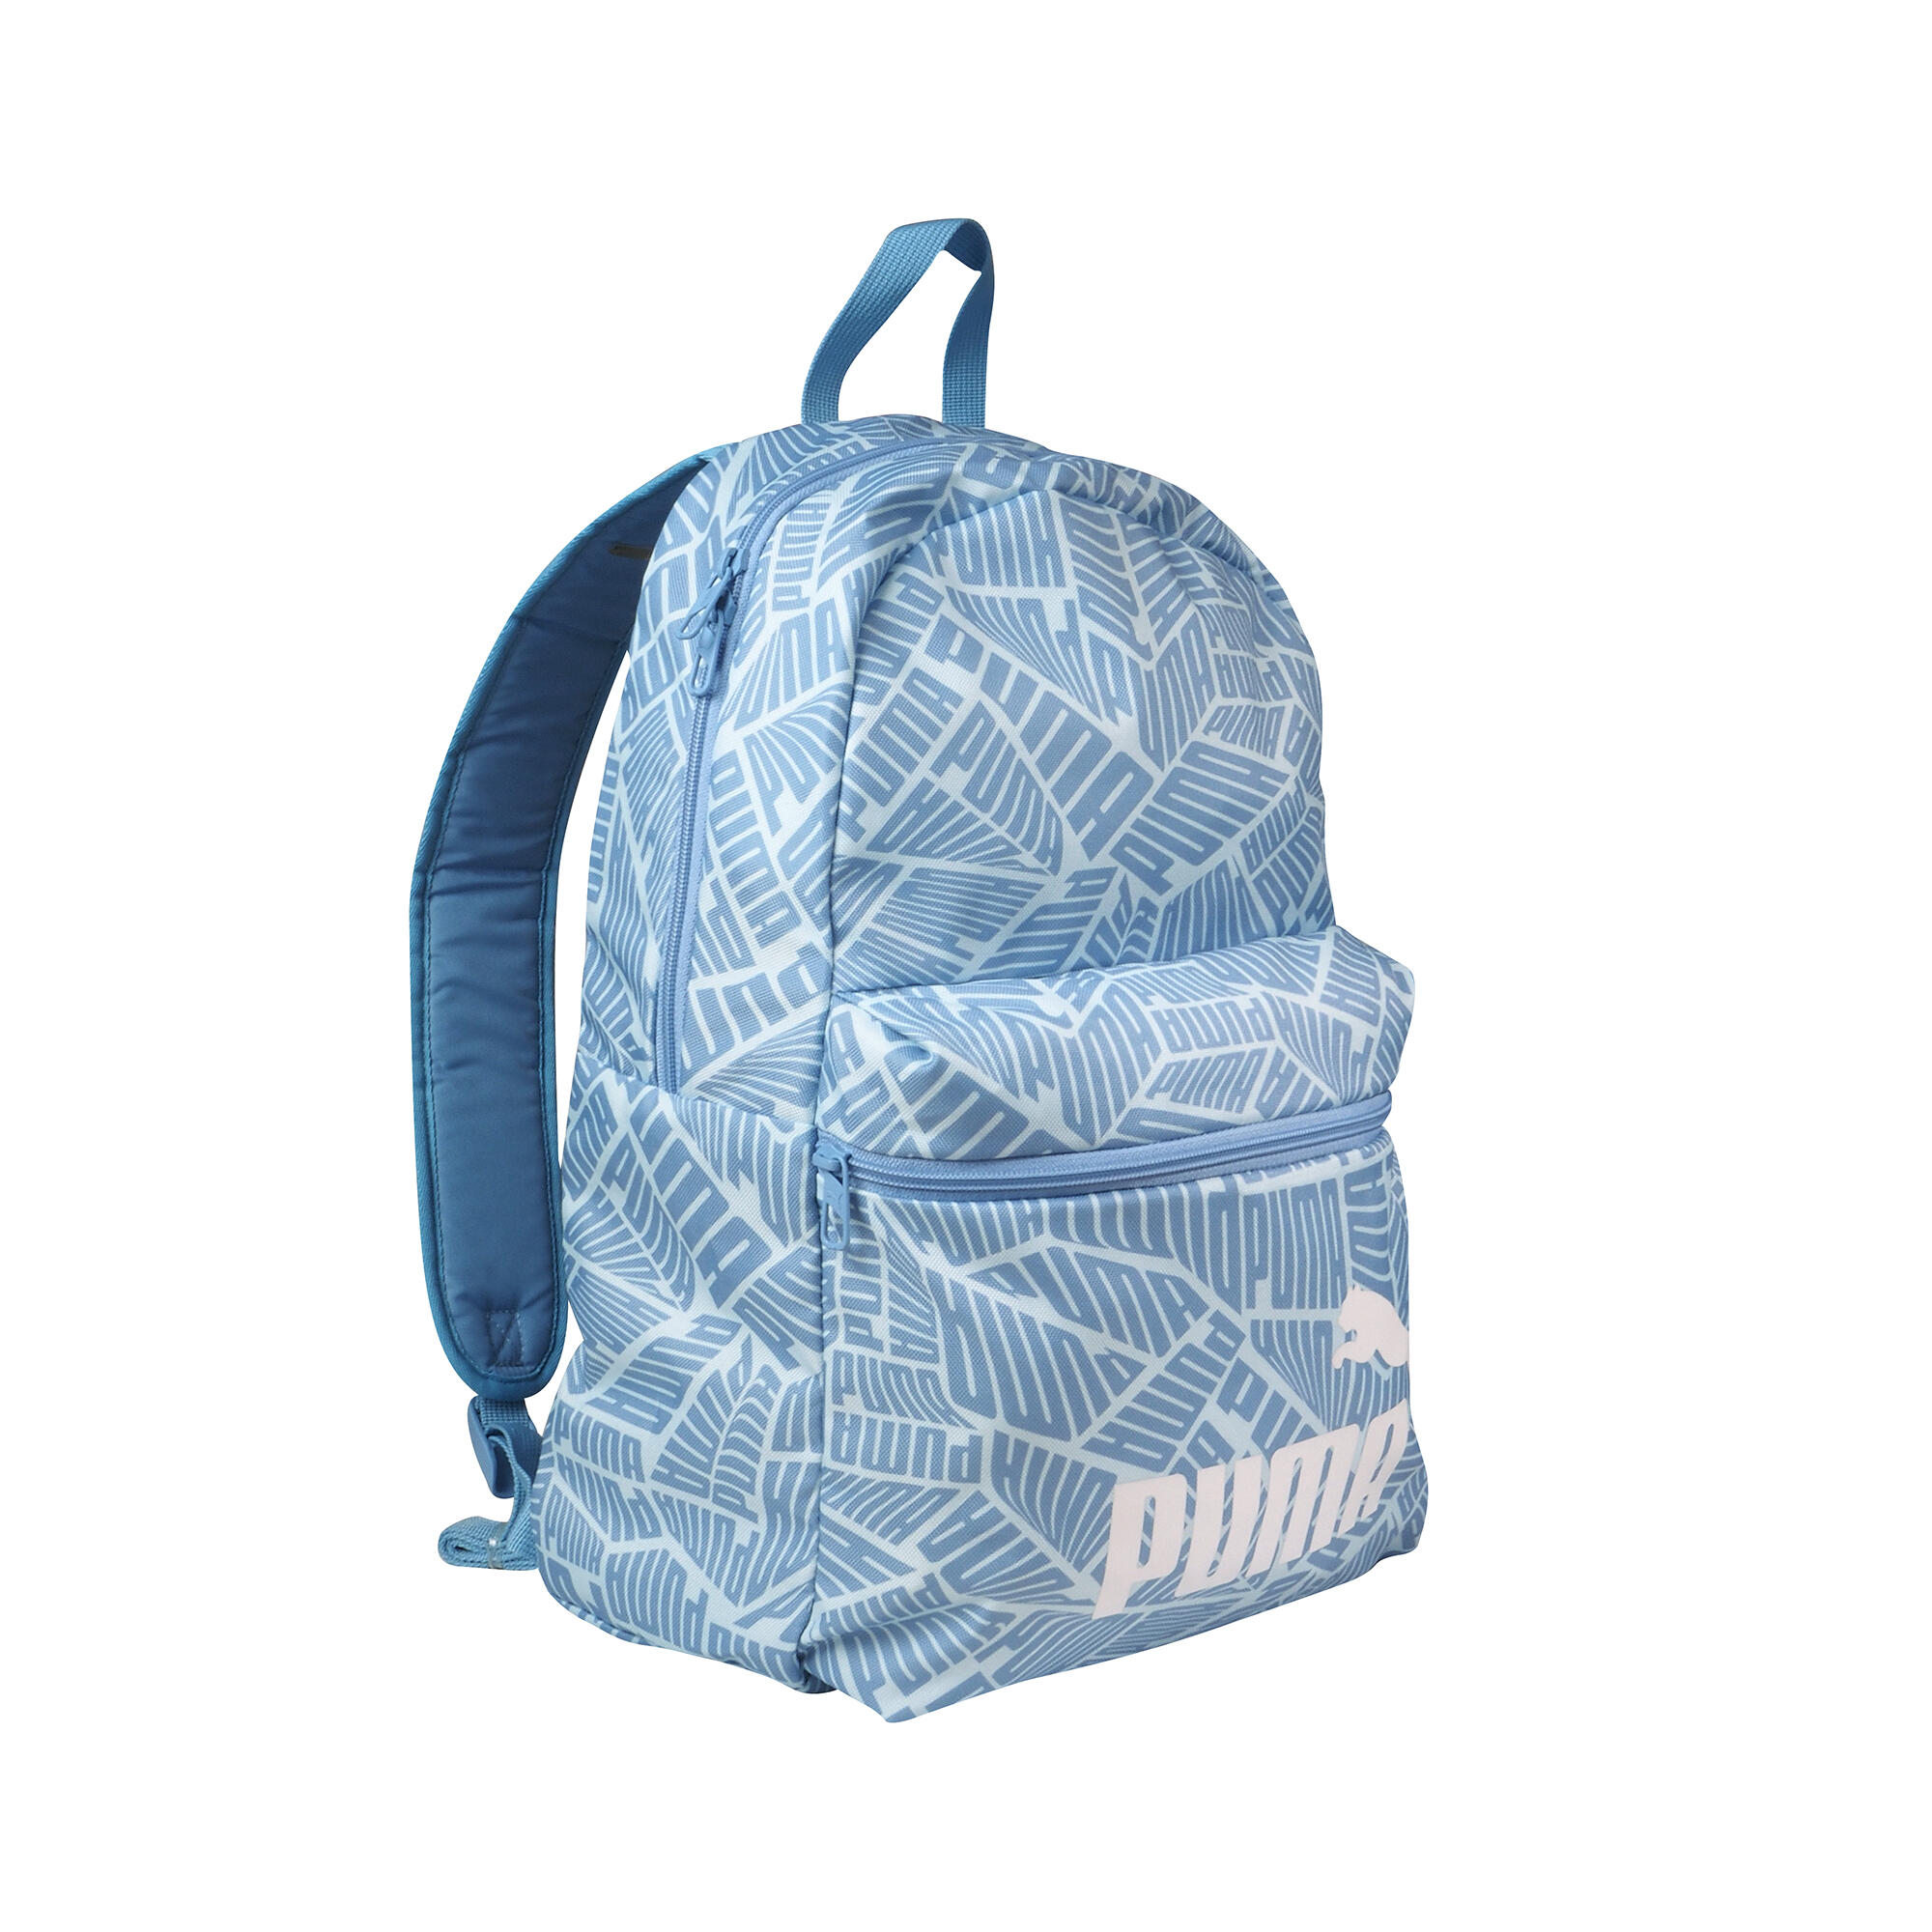 PUMA -Backpack Bag Big Boys' EverCat GrandSlam- Red, White & Blue- New  W/Tags | eBay